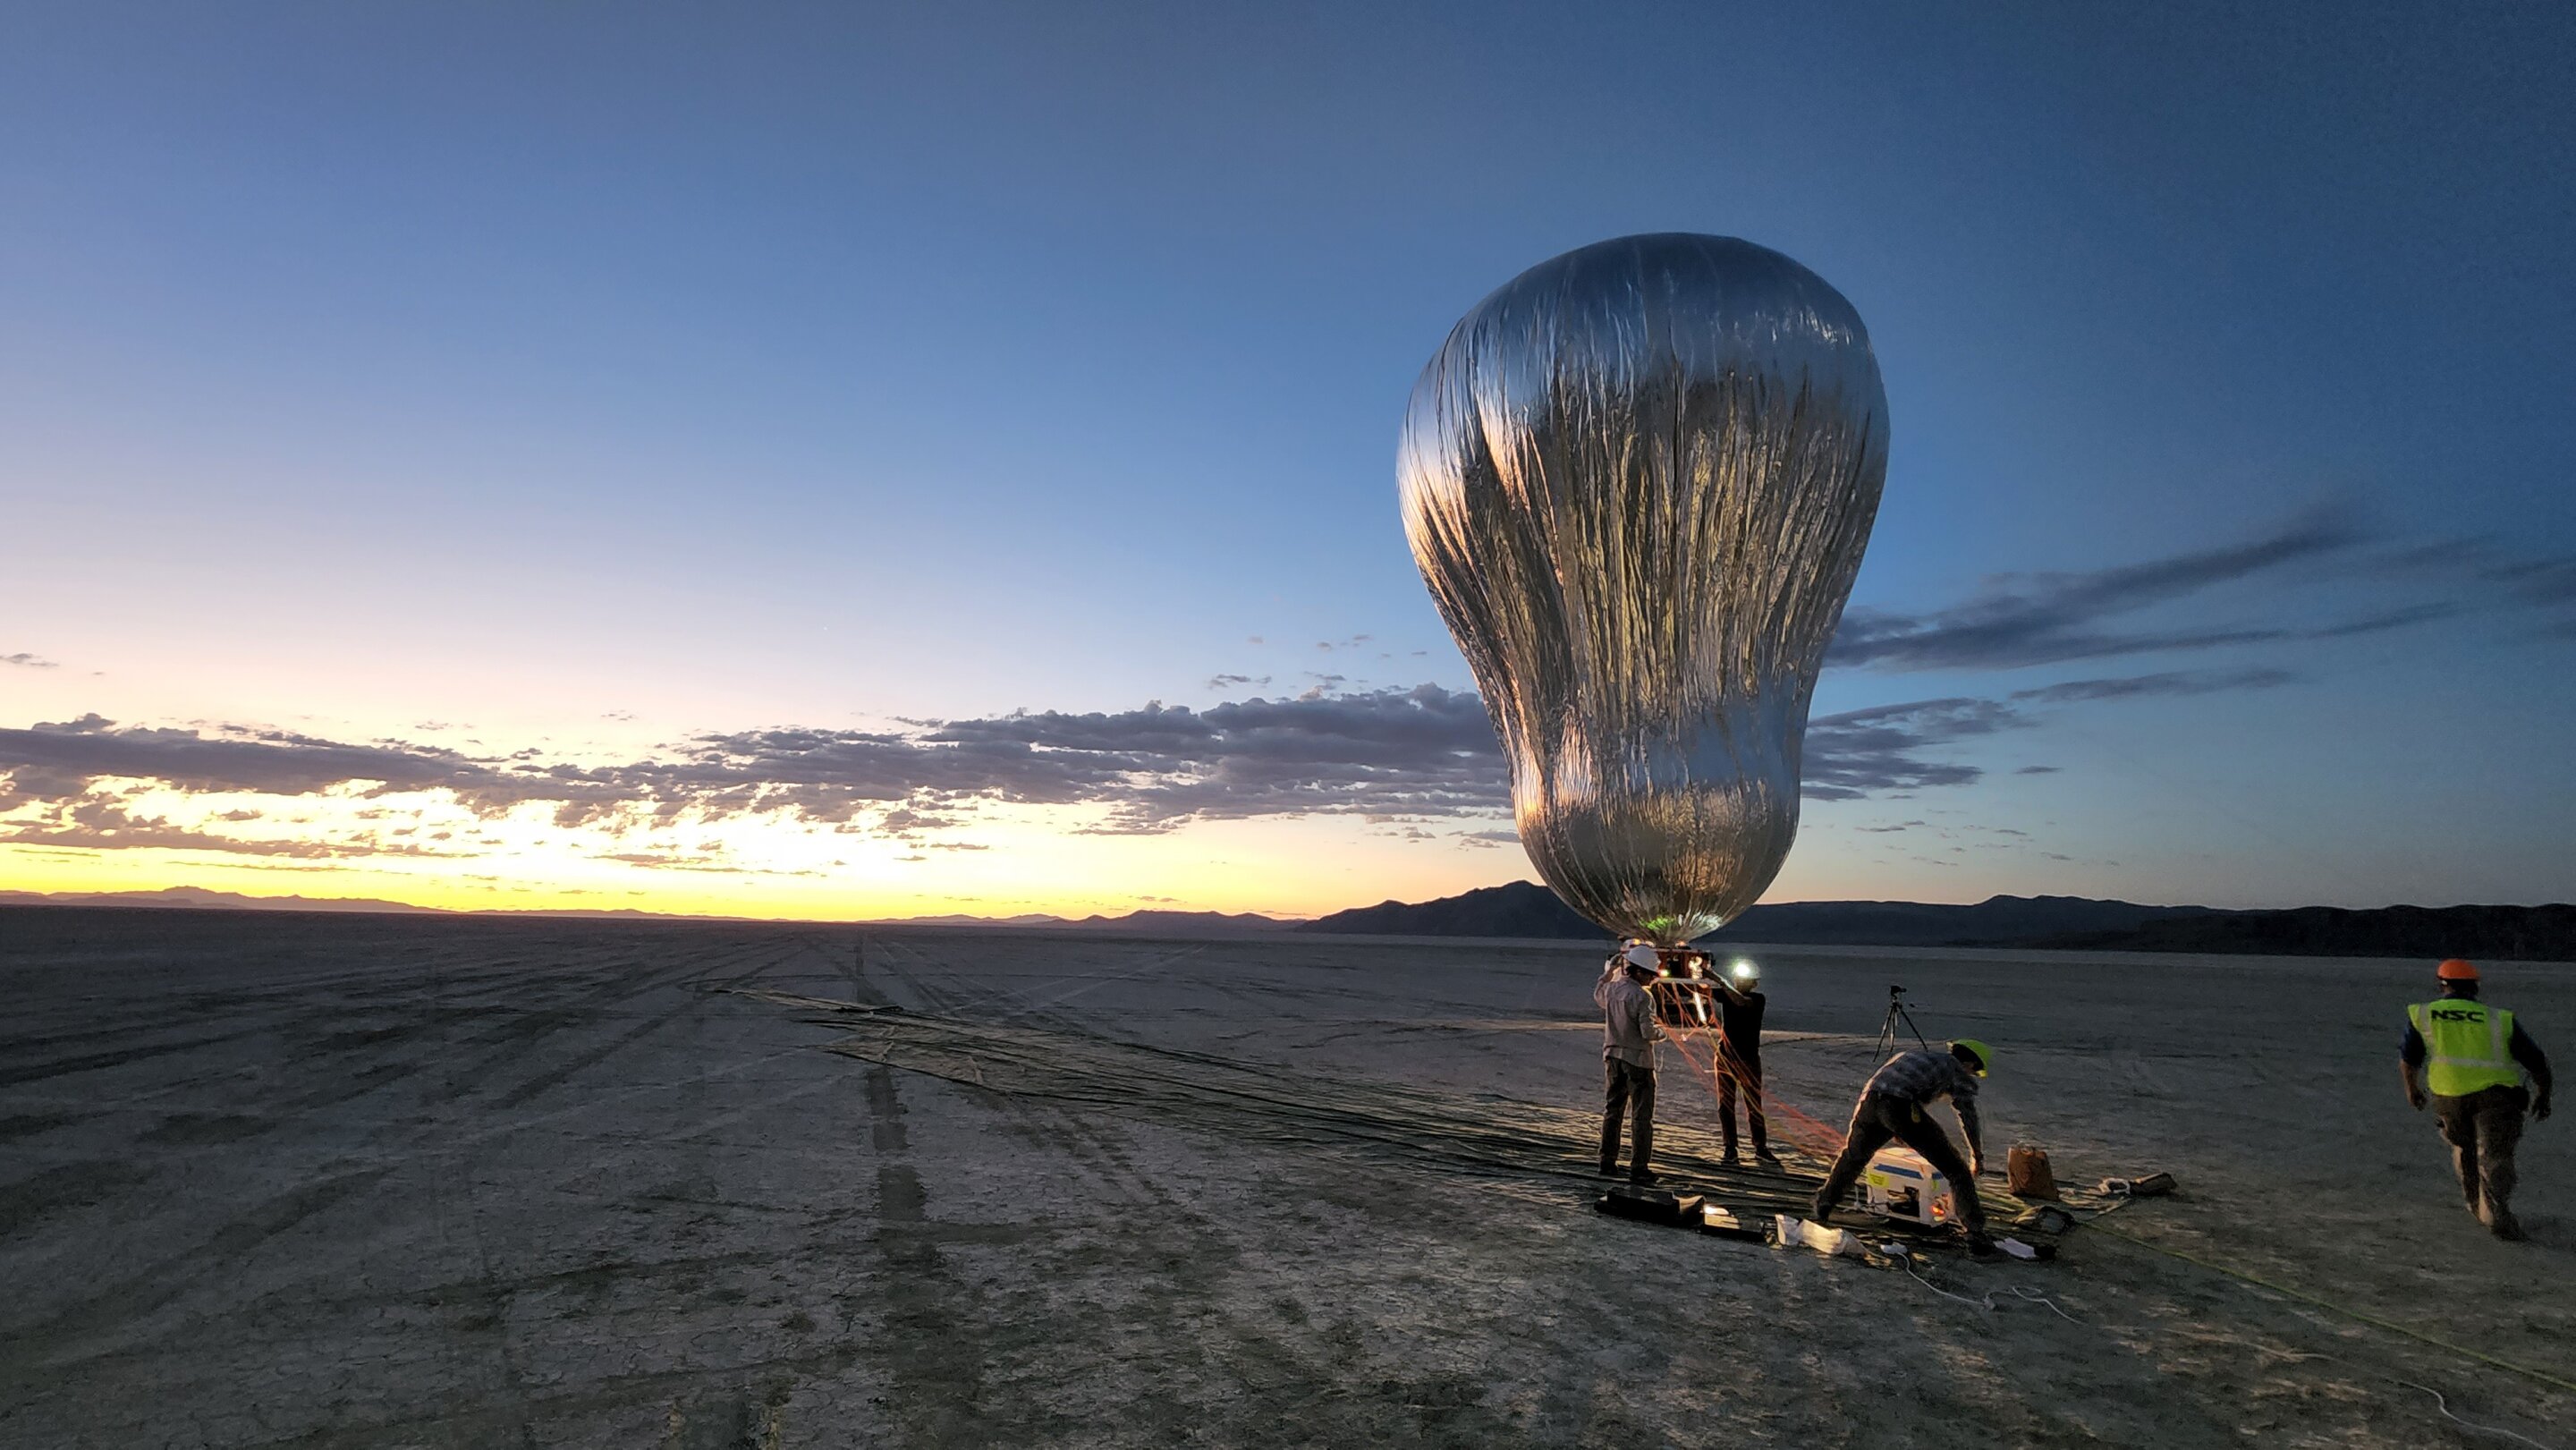 Het prototype van de robotachtige Venusballon van JPL voor testvluchten